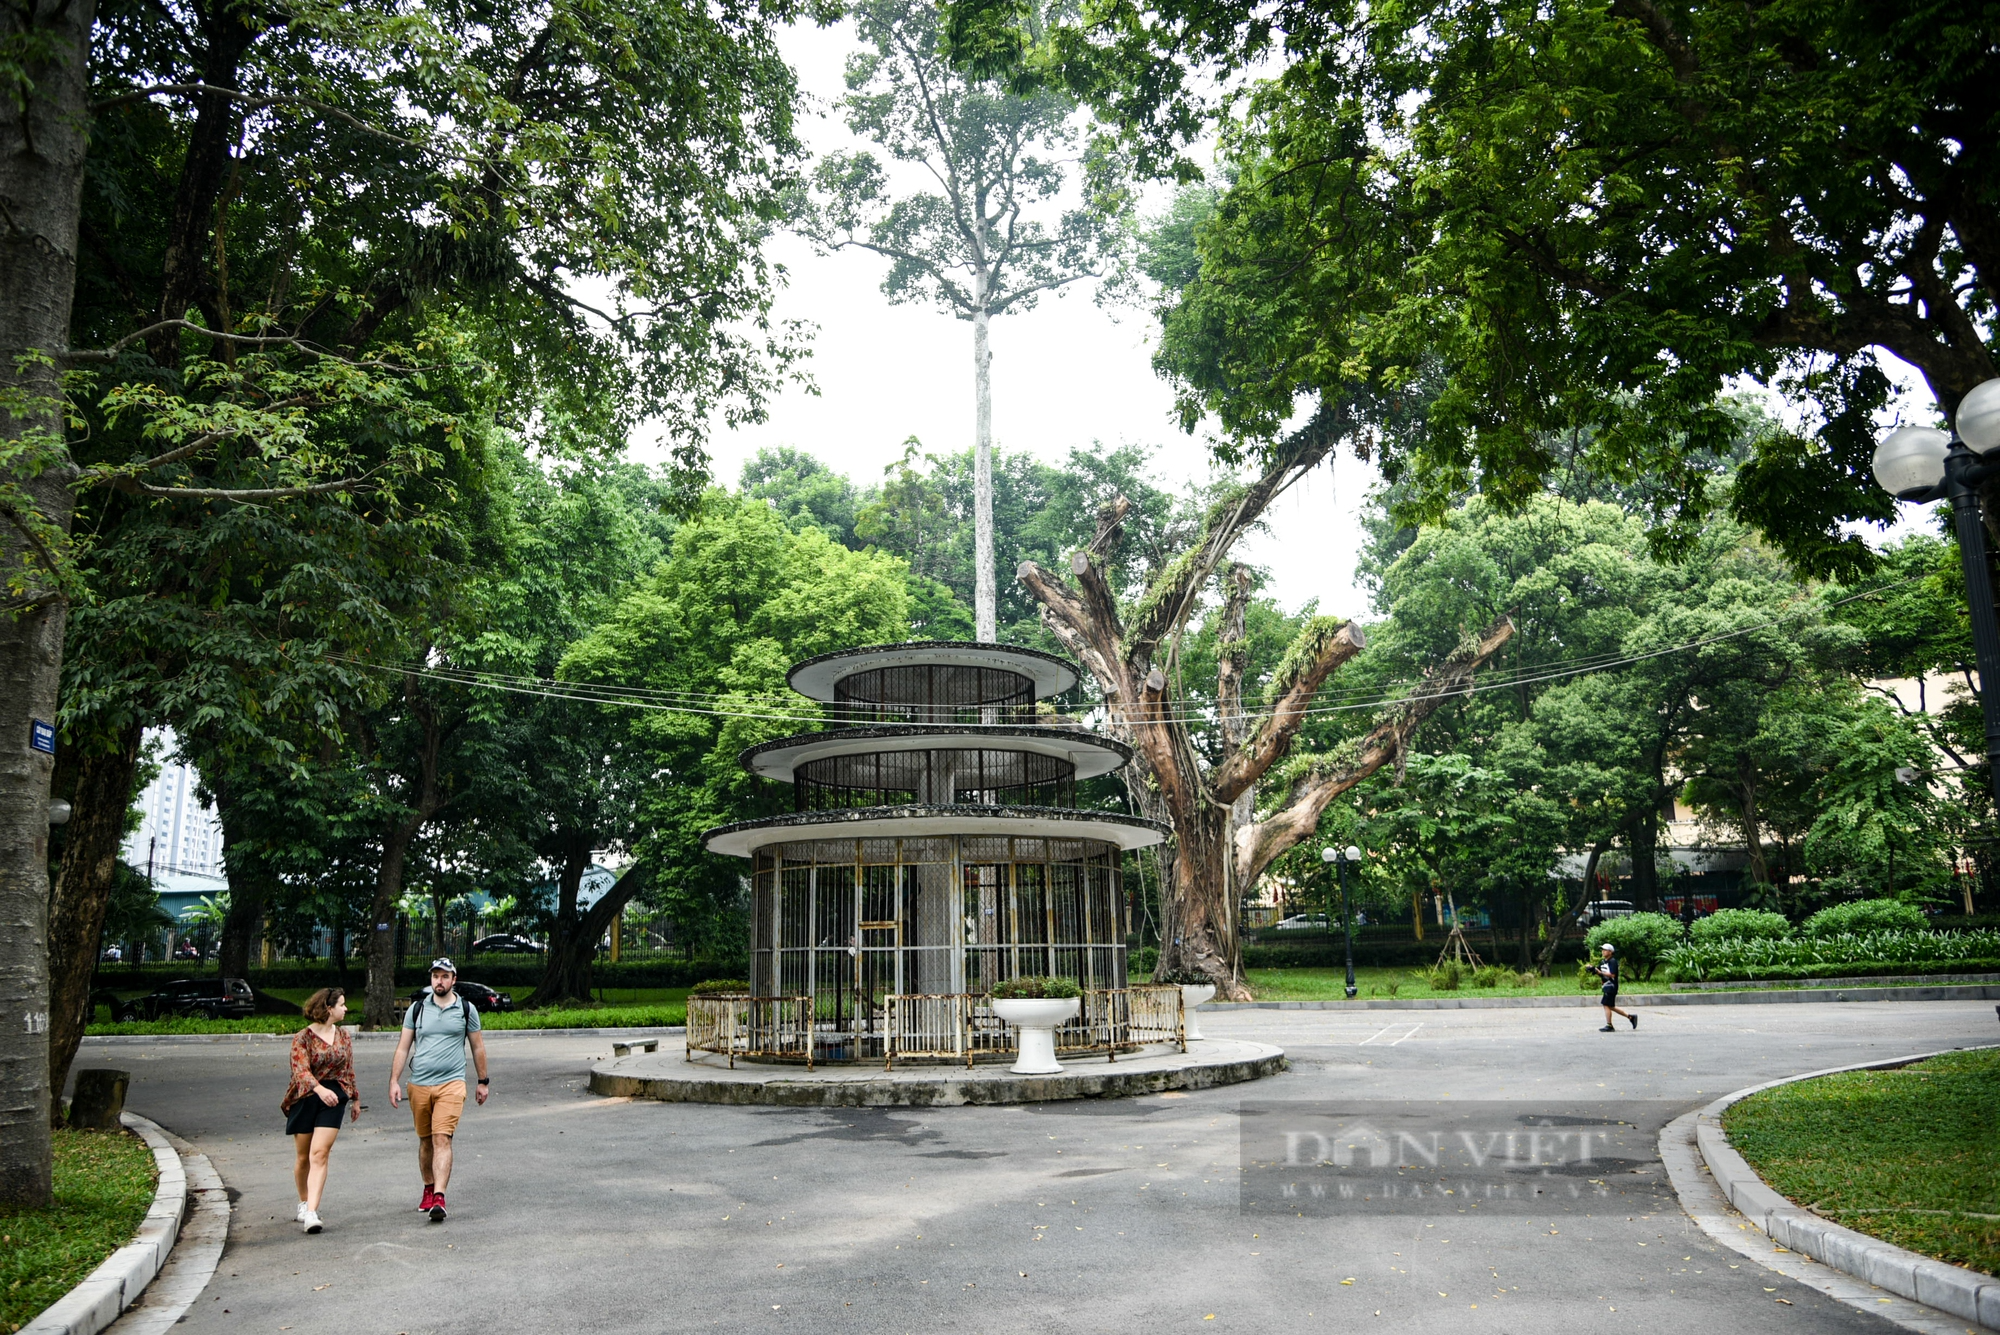 Cận cảnh ba công viên lớn ở Hà Nội được đầu tư 900 tỷ đồng để cải tạo - Ảnh 2.